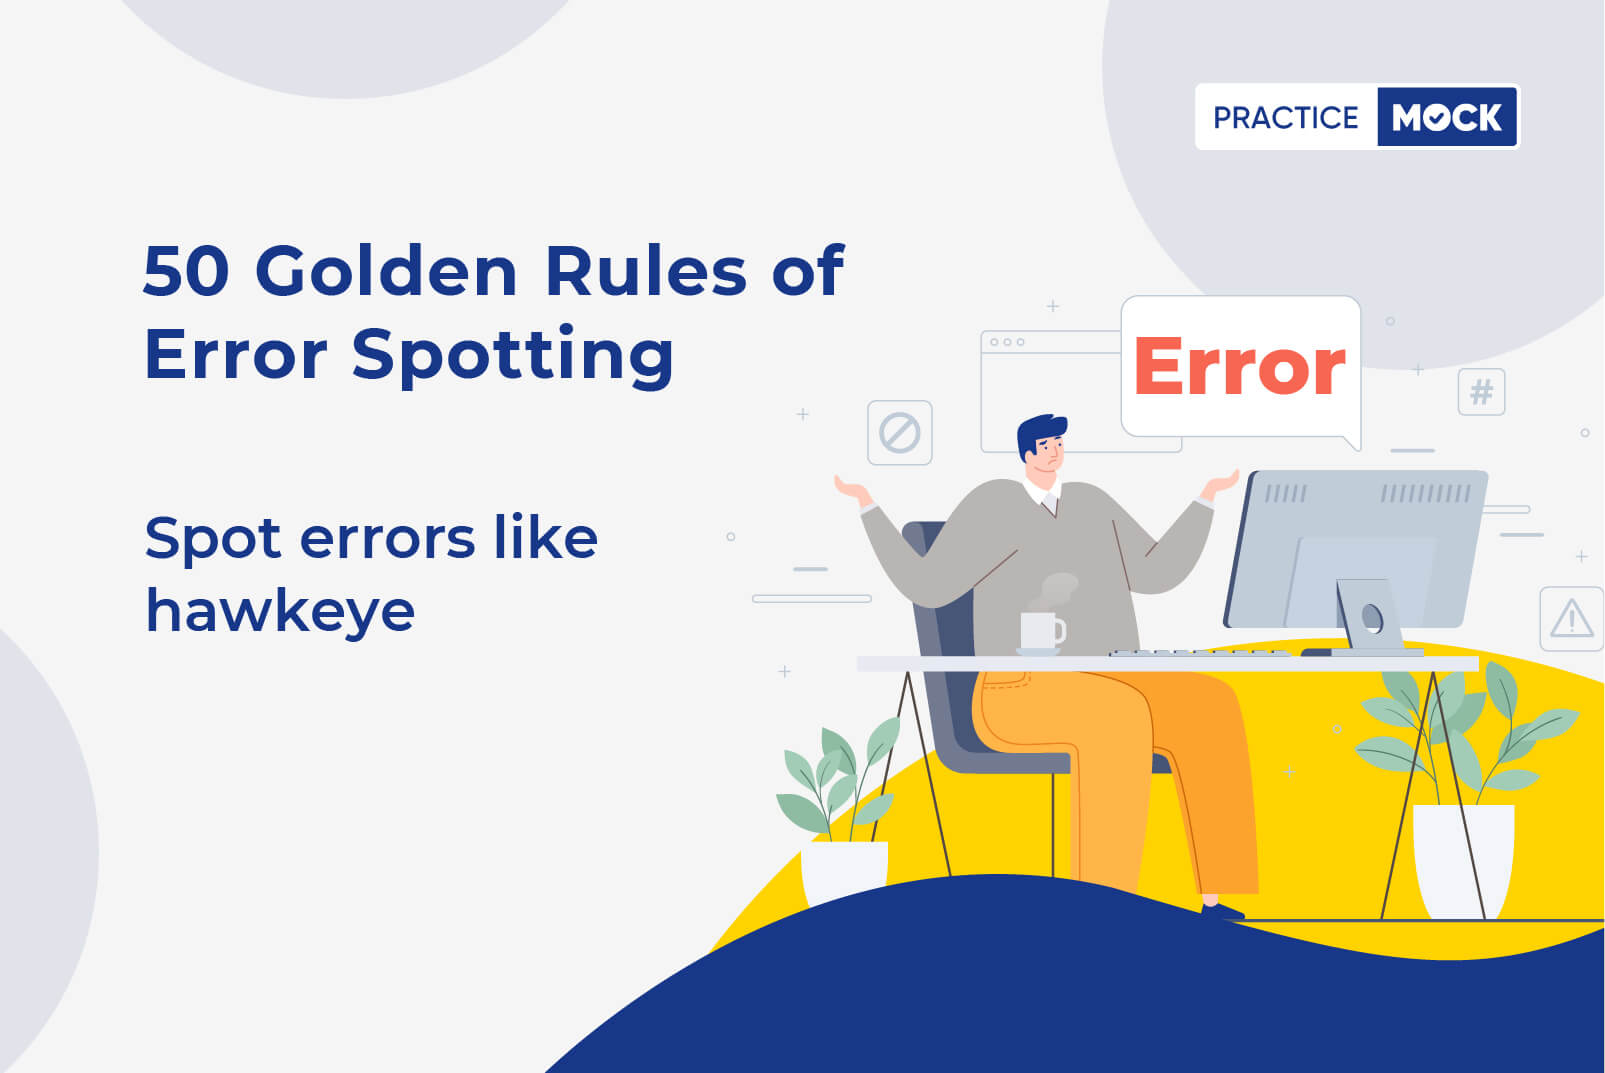 Rules for error spotting